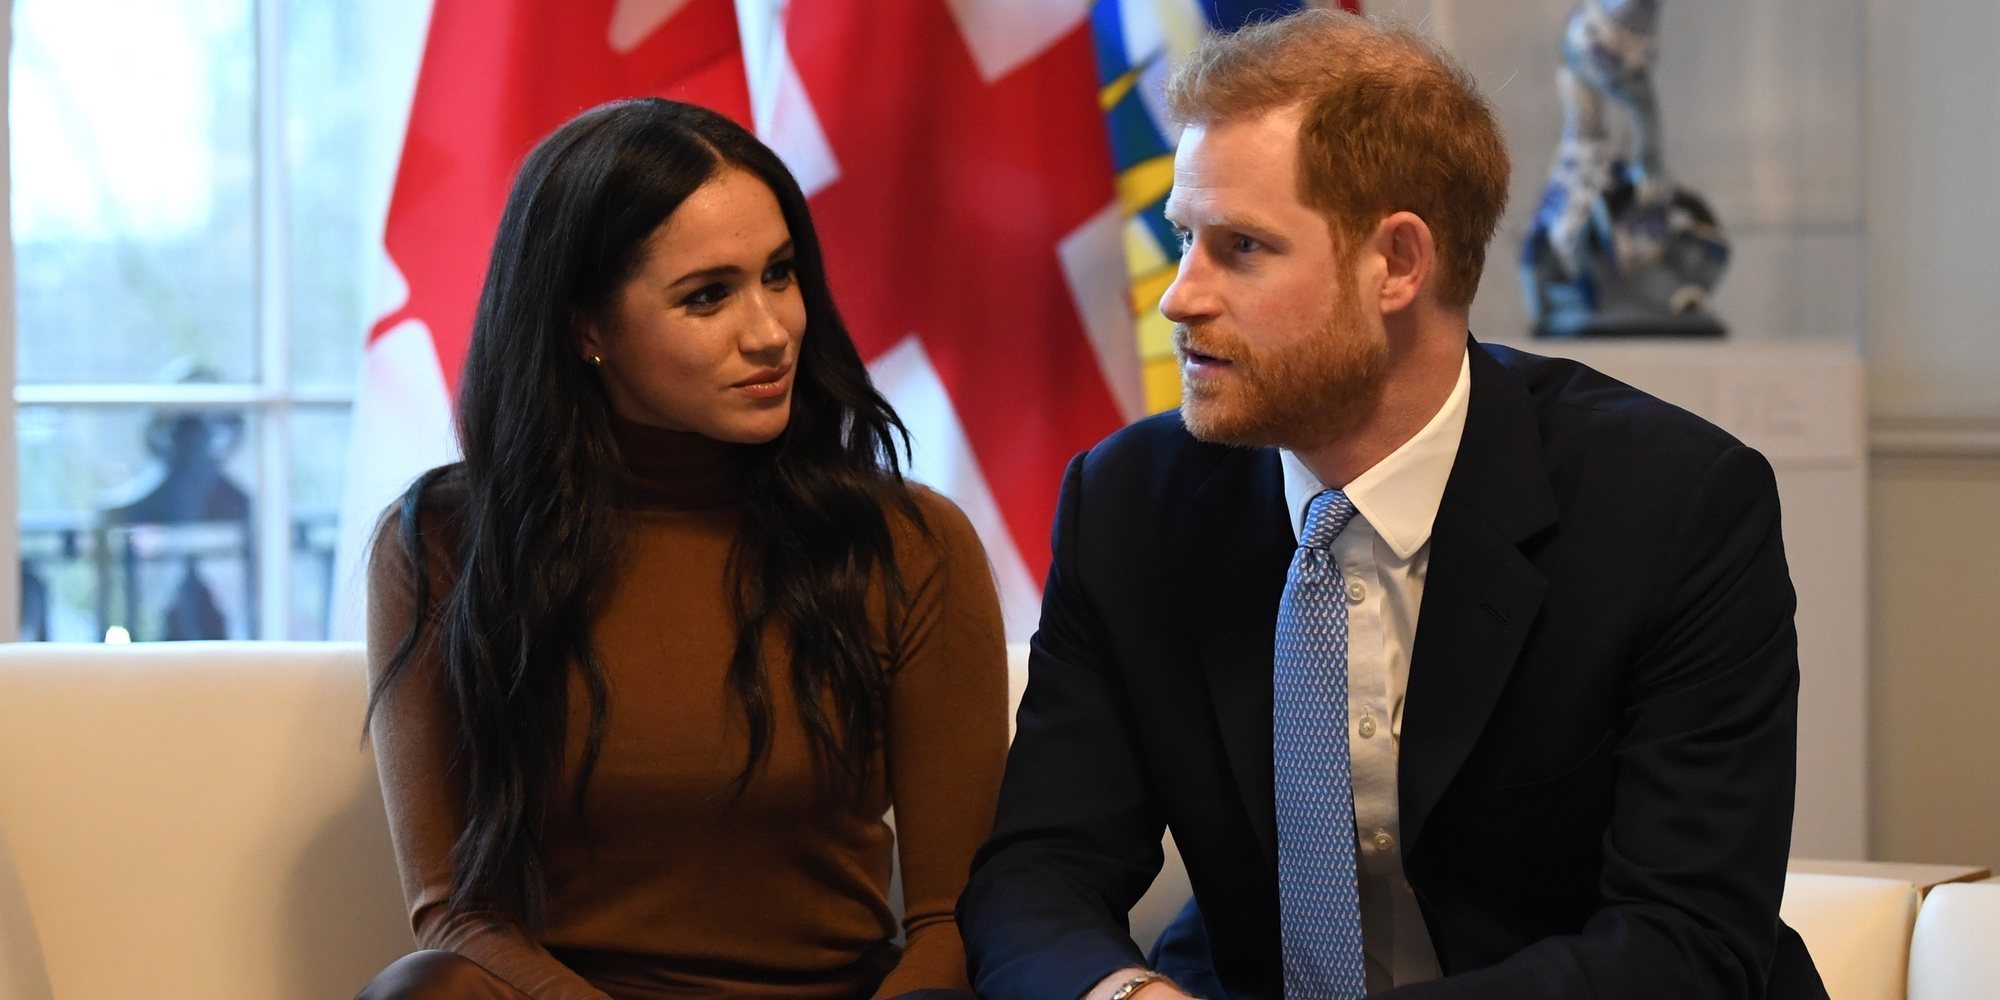 El Príncipe Harry y Meghan Markle blindan su casa de Canadá contra los paparazzi